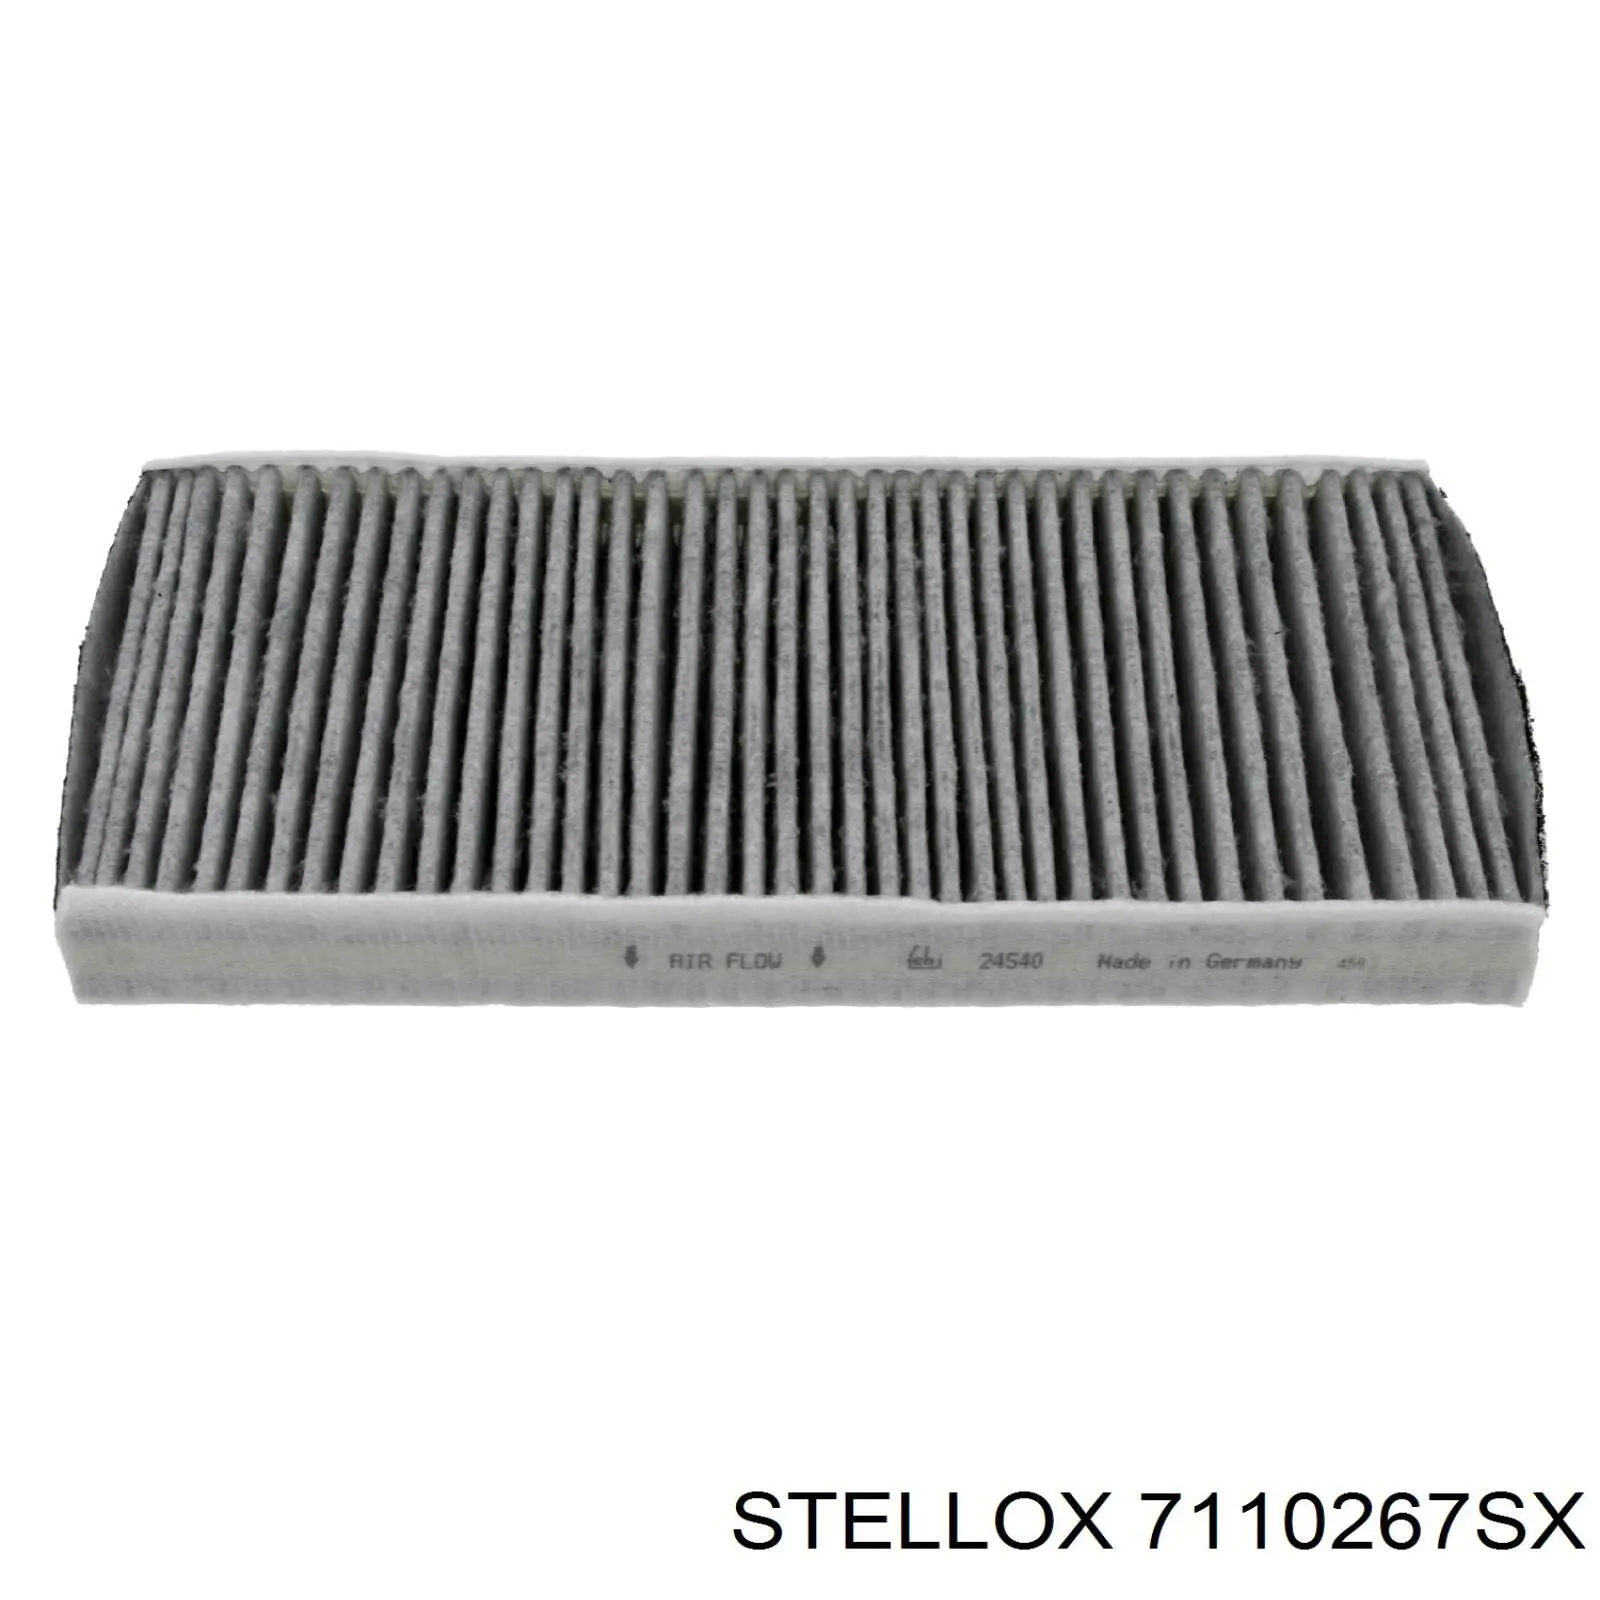 7110267SX Stellox filtro habitáculo